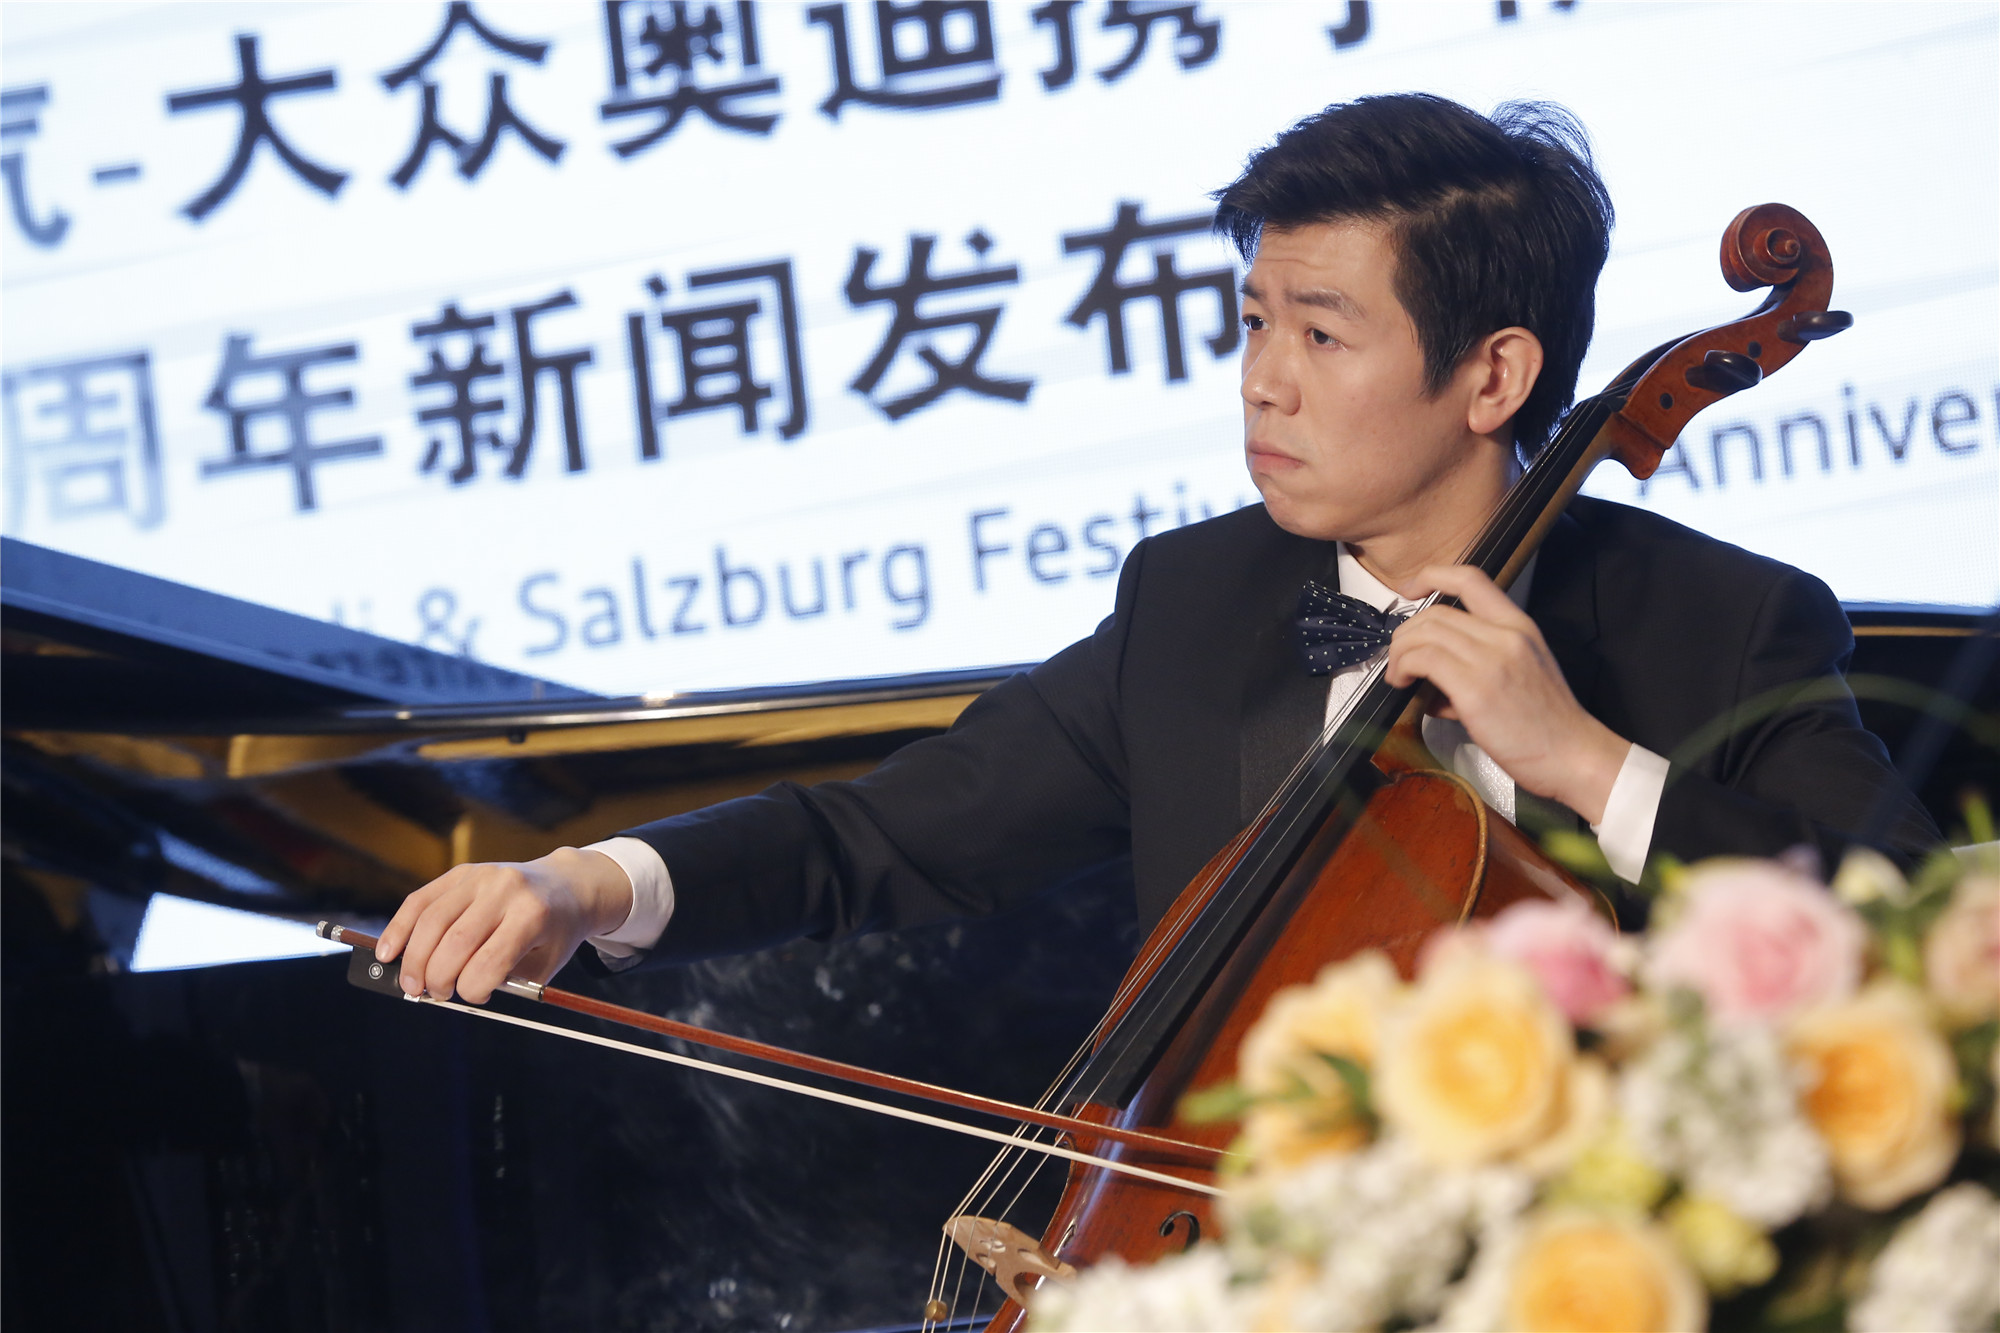 一汽-大众奥迪携手萨尔斯堡音乐节在京举办20